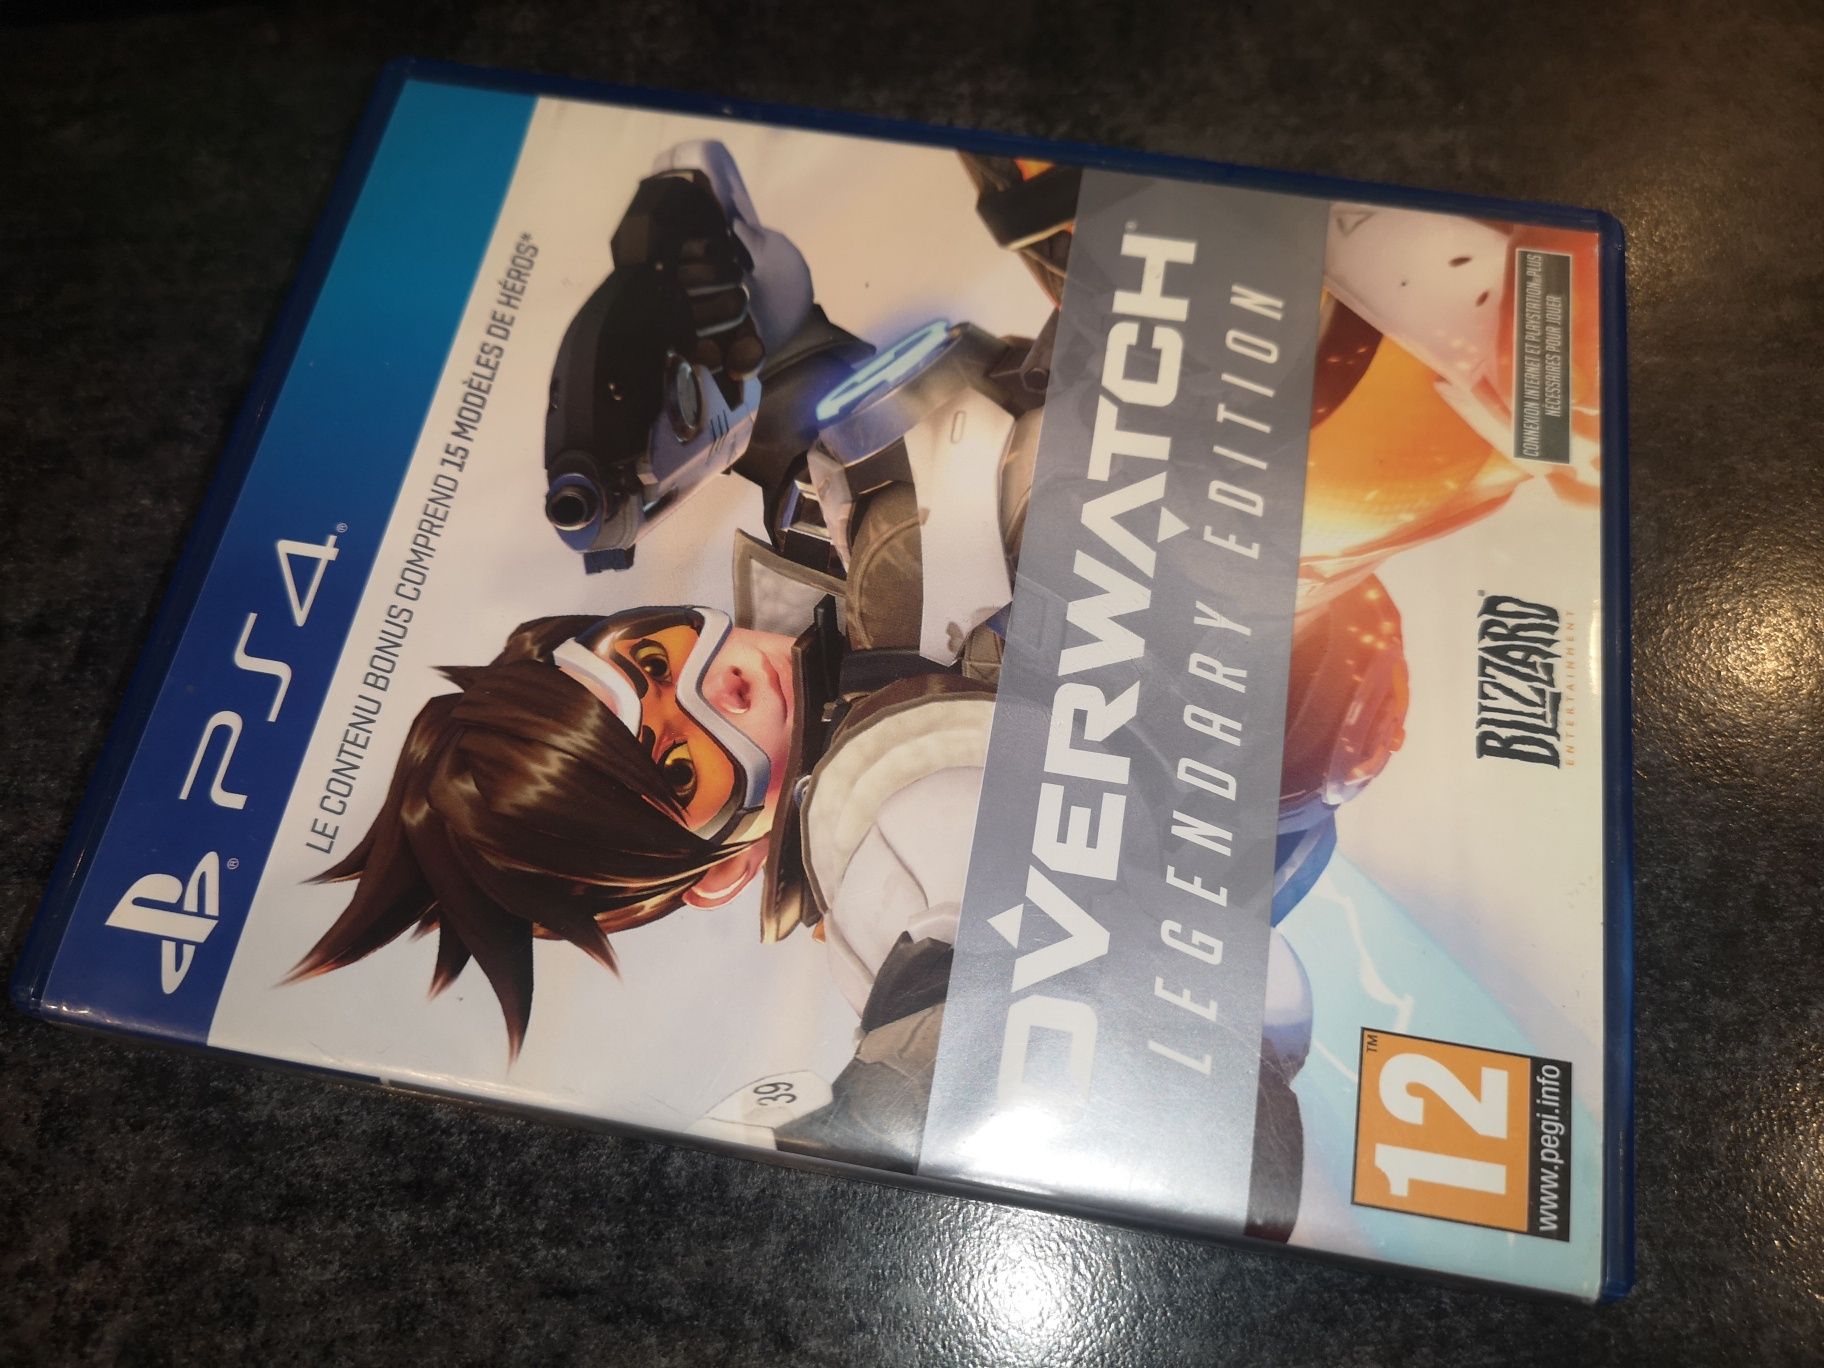 Overwatch LEGENDARY Edition PS4 gra PL (możliwość wymiany) kioskzgrami